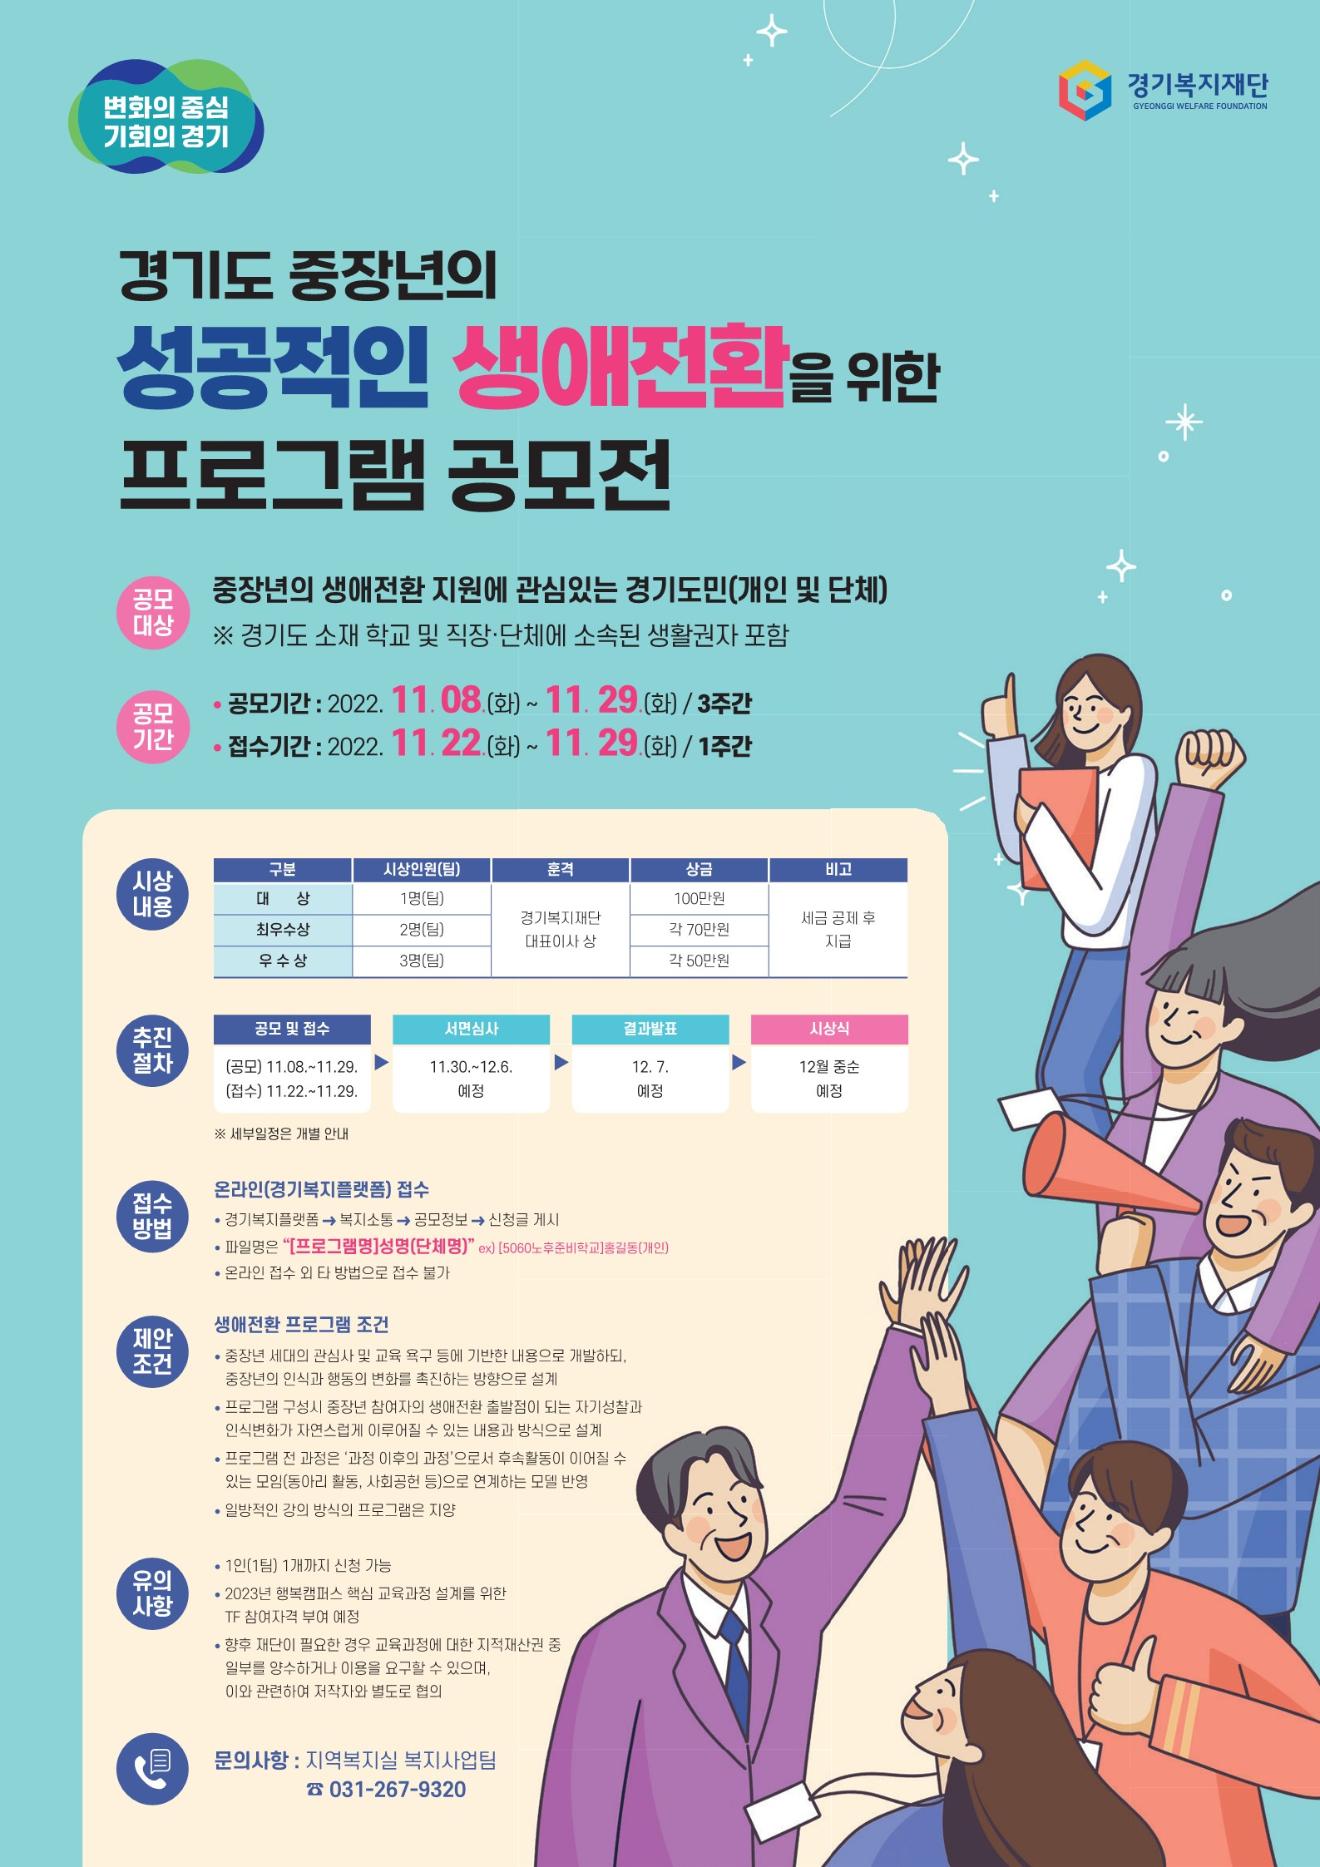 경기도 중장년의 성공적인 생애전환을 위한 프로그램 공모전 웹포스터.jpg